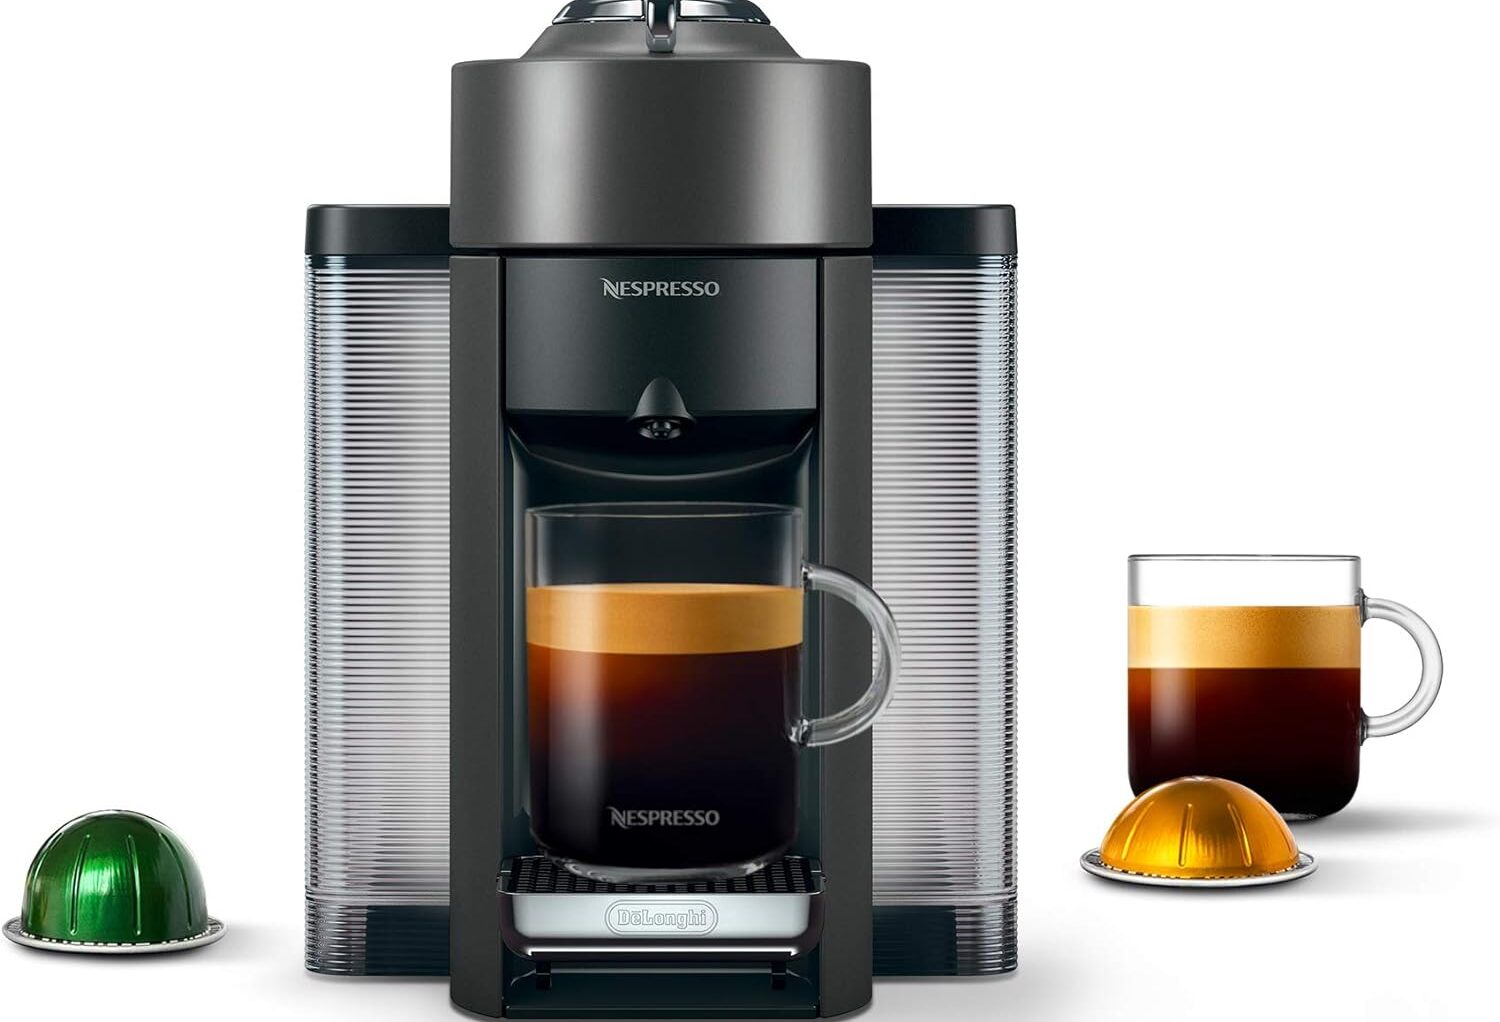 NESPRESSO VERTUO COFFEE AND ESPRESSO MACHINE BY DE’LONGHI